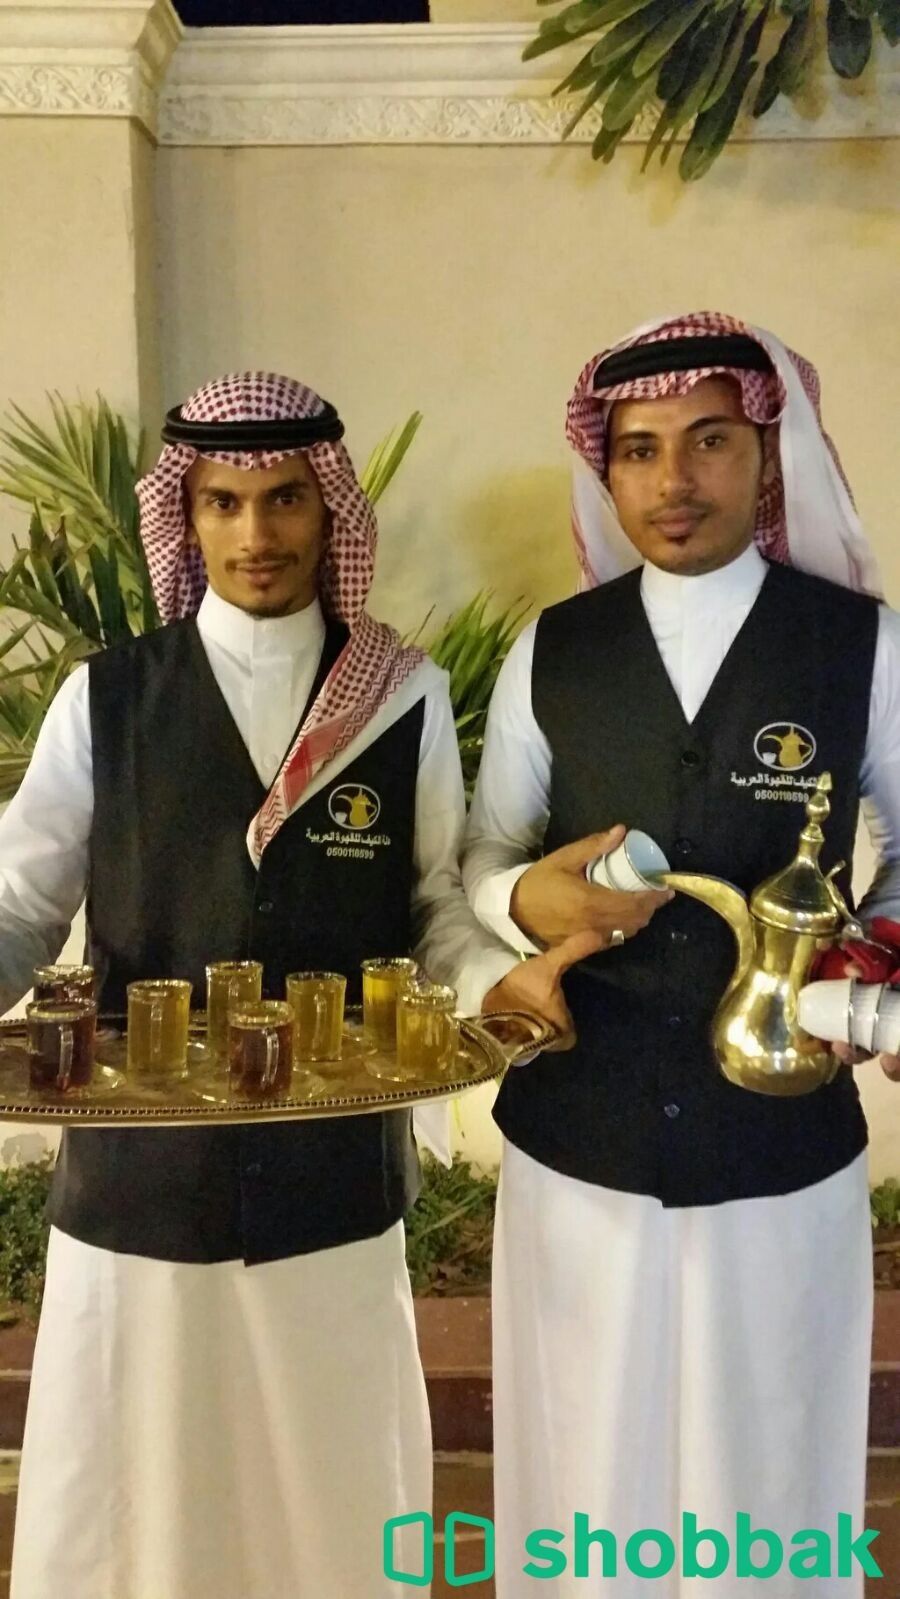 قهوجيين صبابين مباشرين قهوة وشاي جده0549152300 شباك السعودية